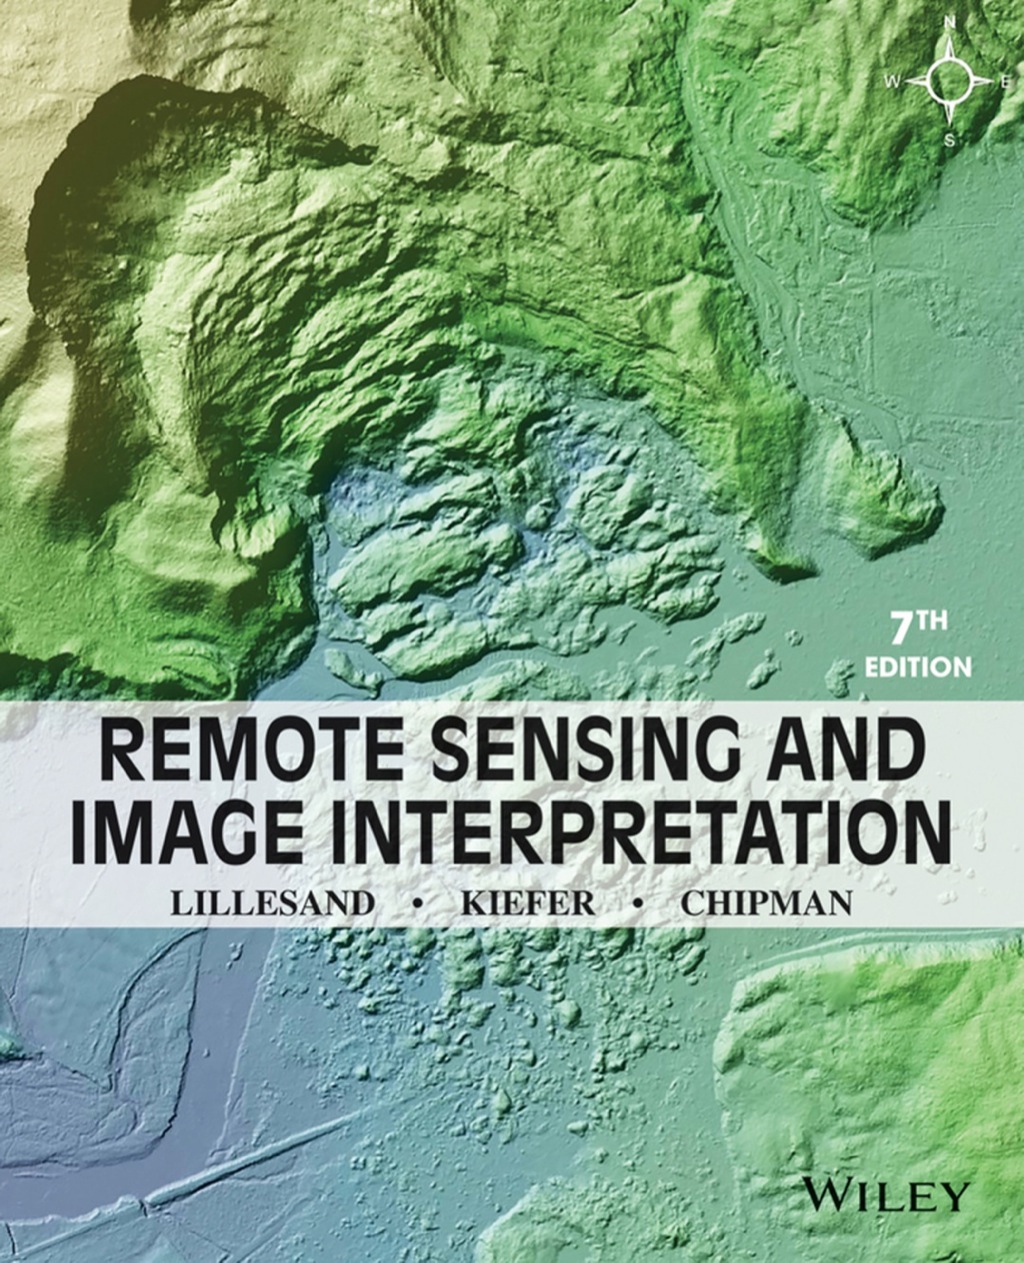 Remote Sensing and Image Interpretation - 7th Edition (eBook Rental)